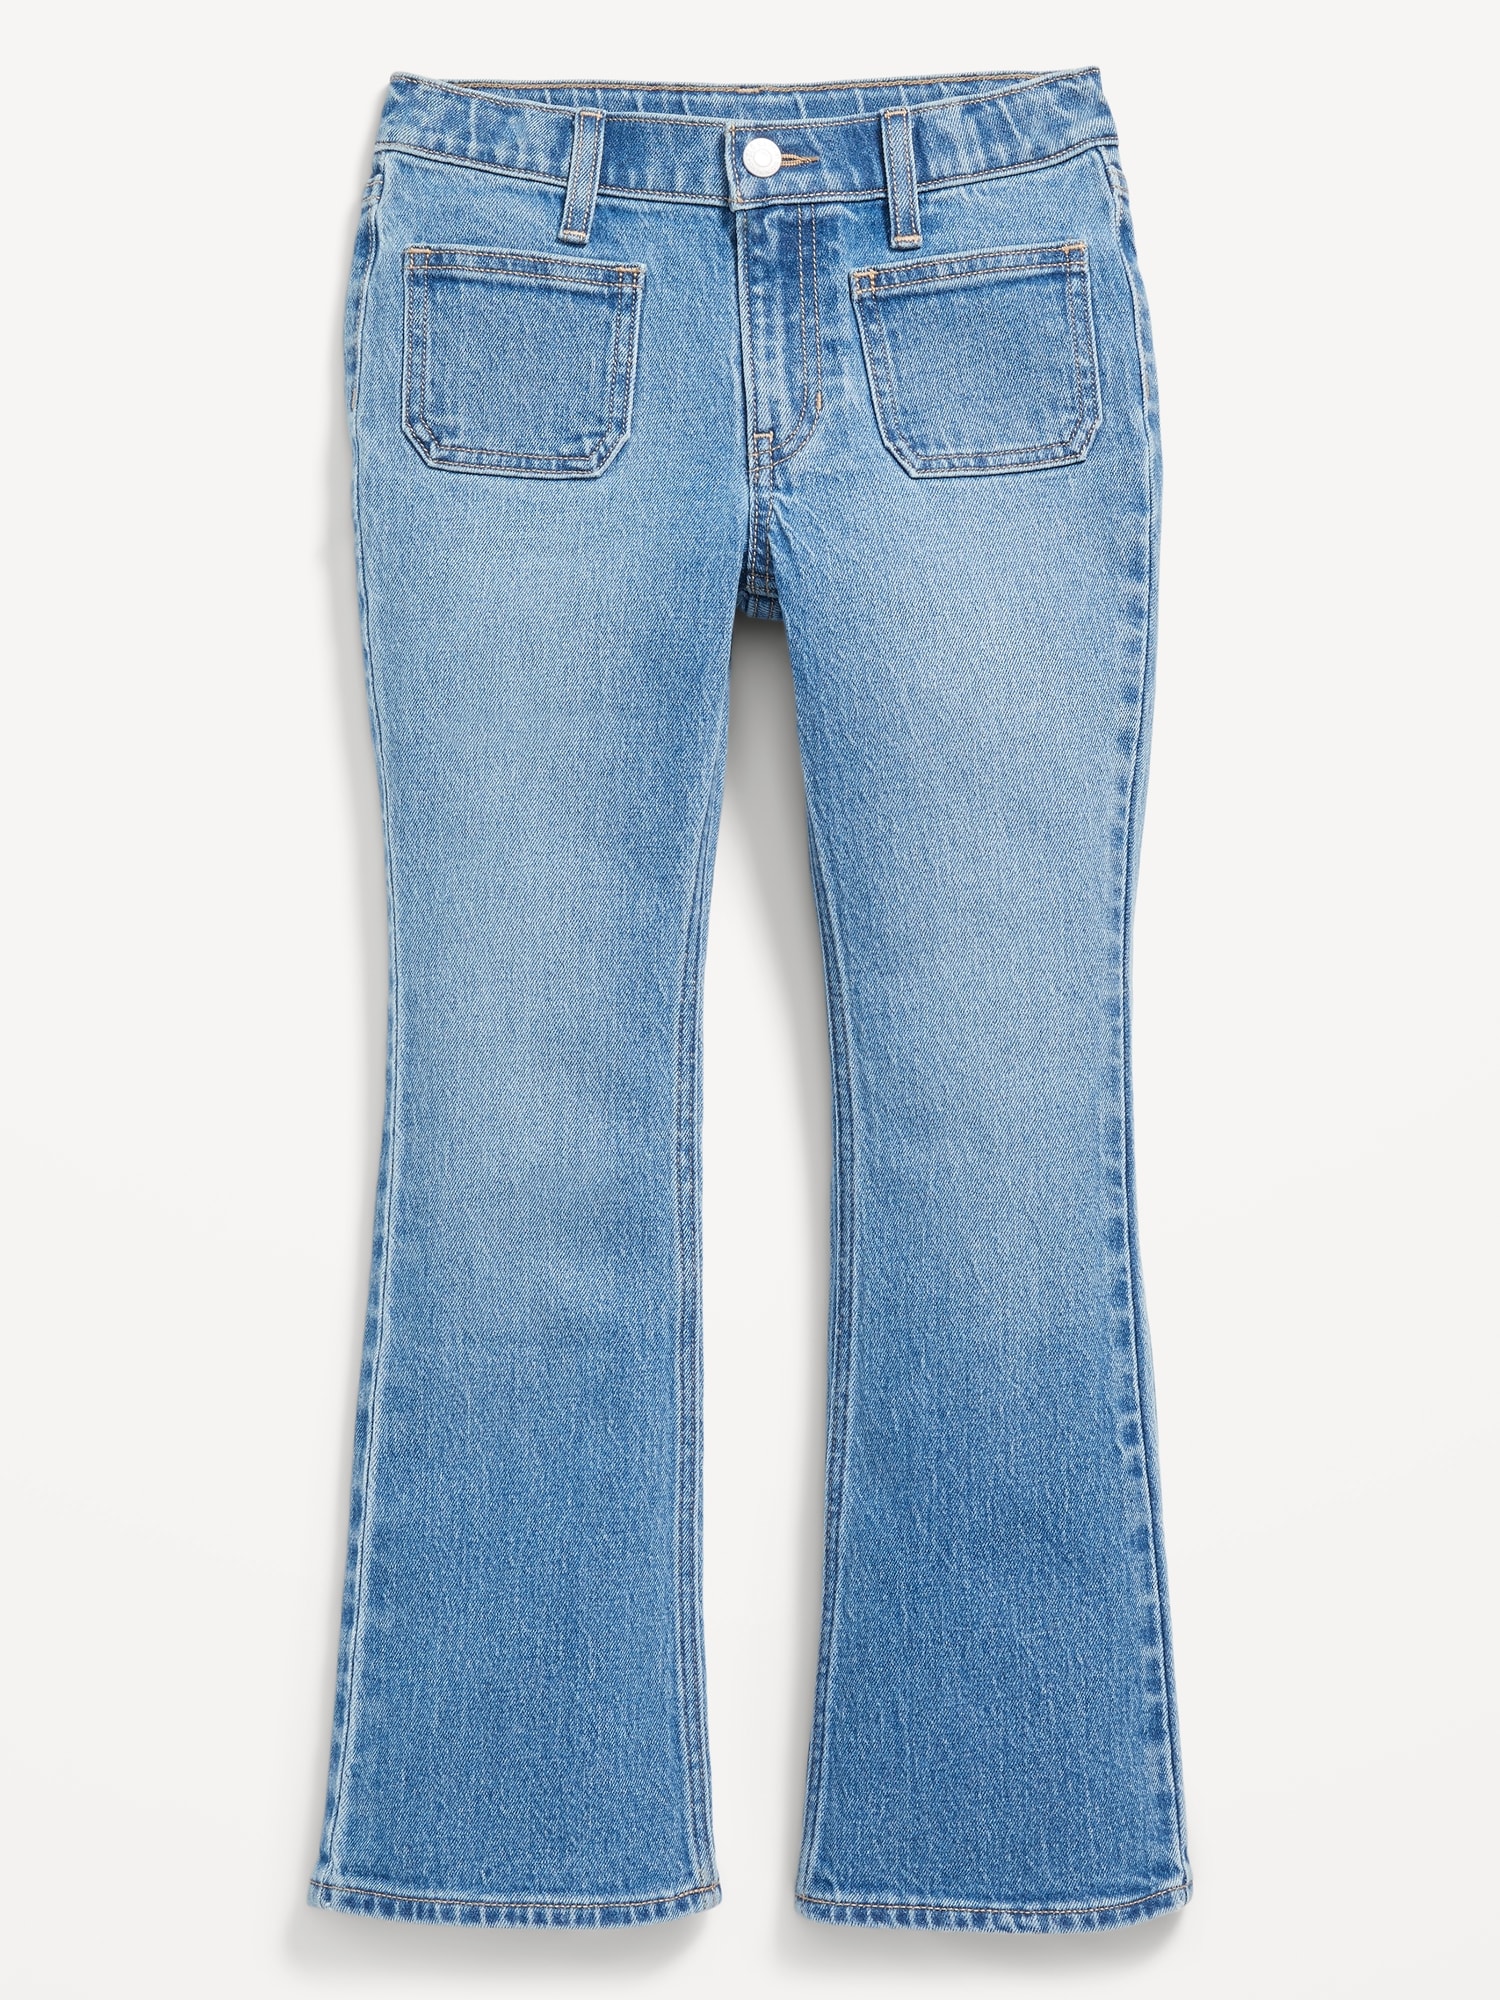 Old Navy 5-Pocket Design Flare Jeans for Women